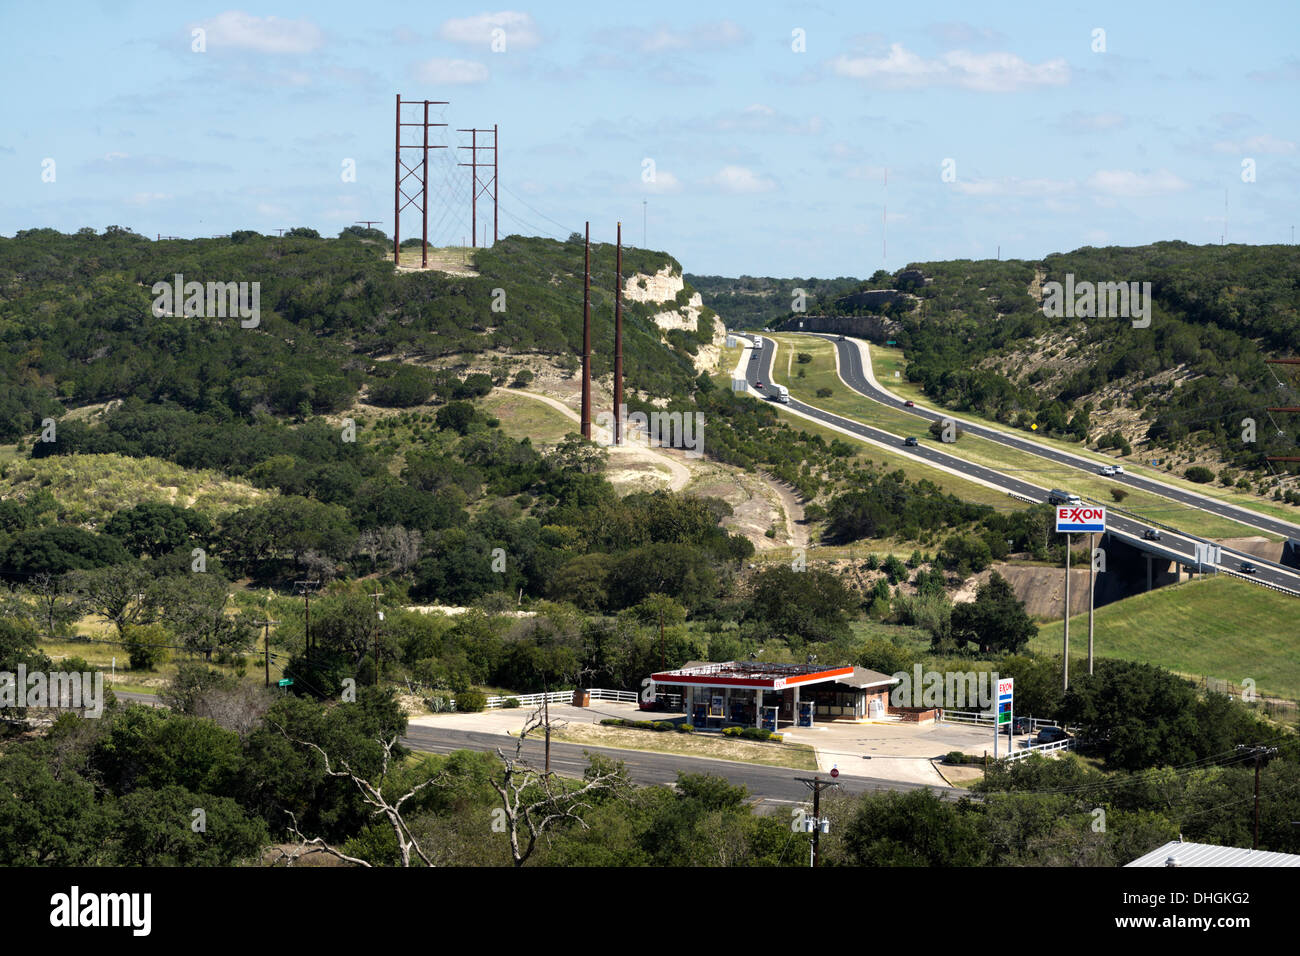 Station de gaz d'Exxon dans la montagne de l'ouest du Texas, près de Kerrville à côté de l'Interstate 10. Banque D'Images